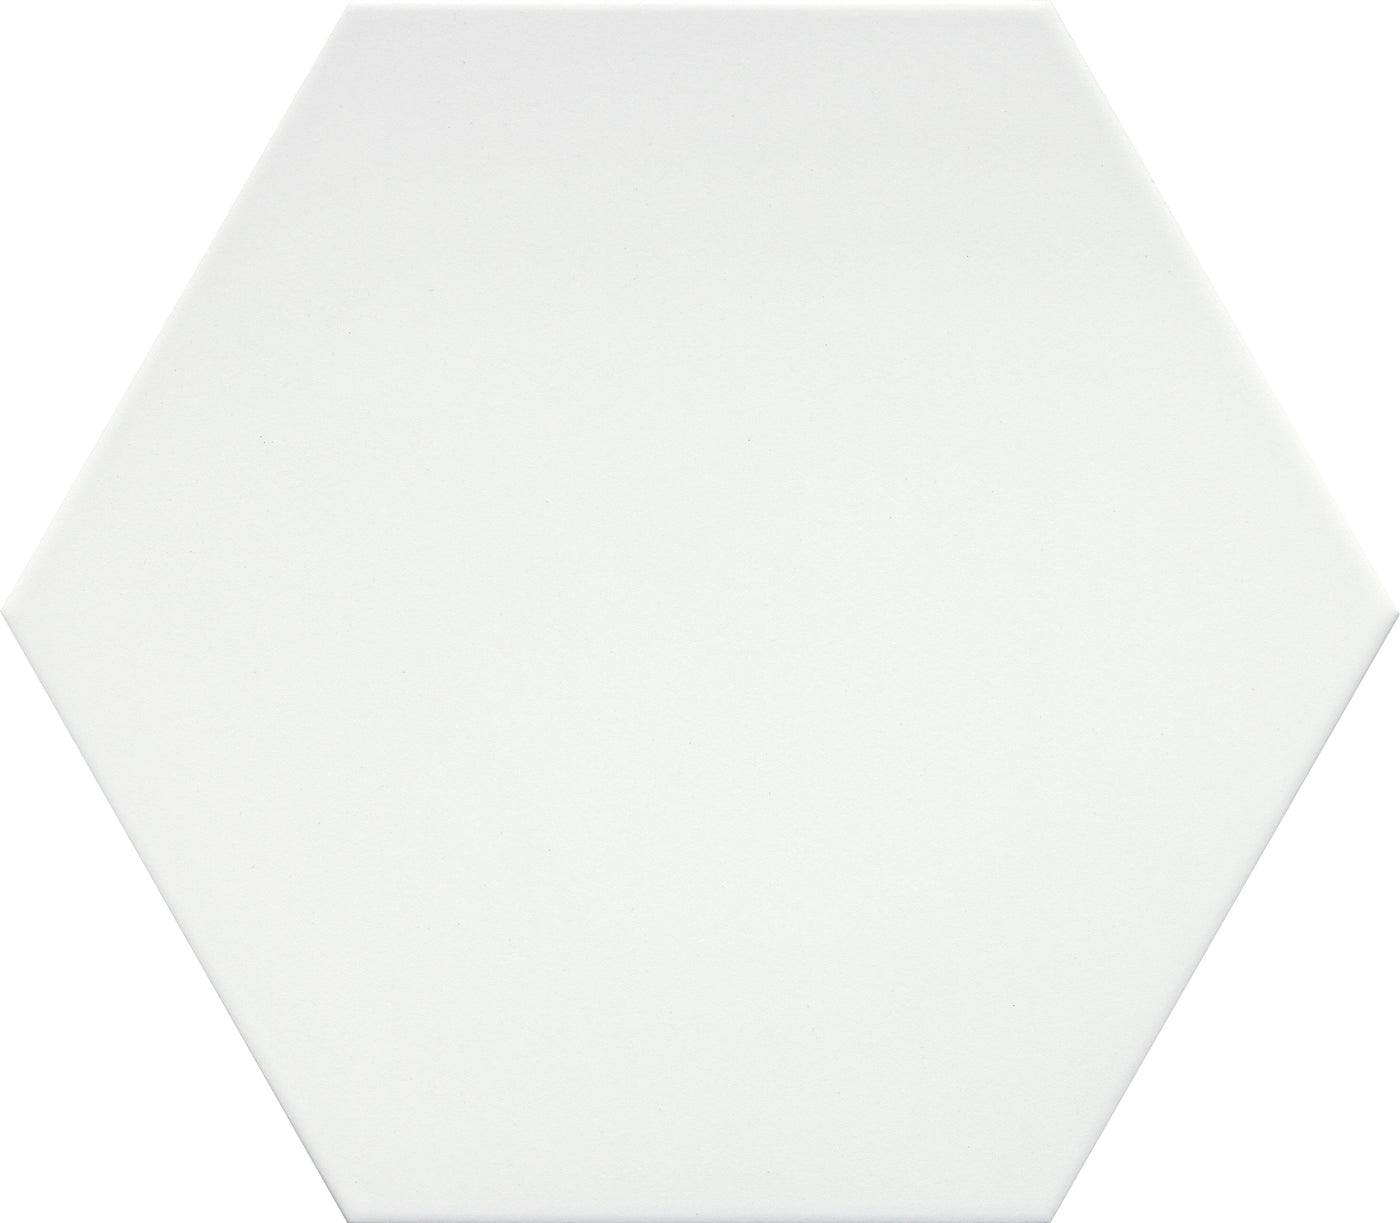 Emser Rhythm 11" x 13" Hex White Porcelain Tile